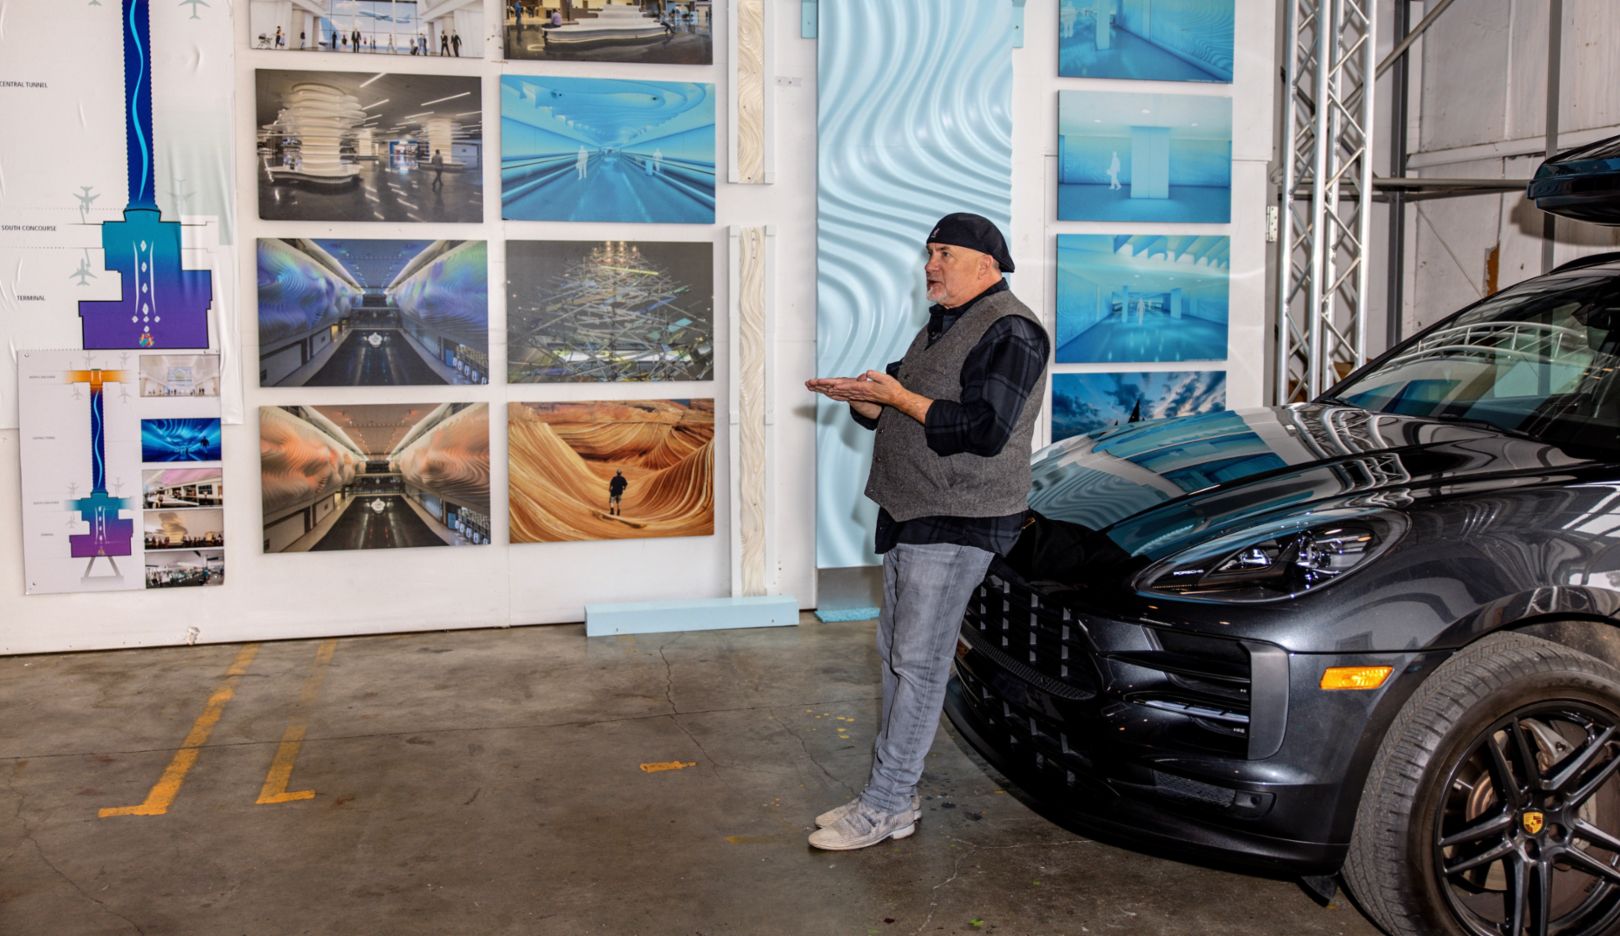 Estacionamento no estúdio: Gordon Huether com seu Porsche Macan S diante de registros dos seus trabalhos, em Napa, Califórnia, EUA.